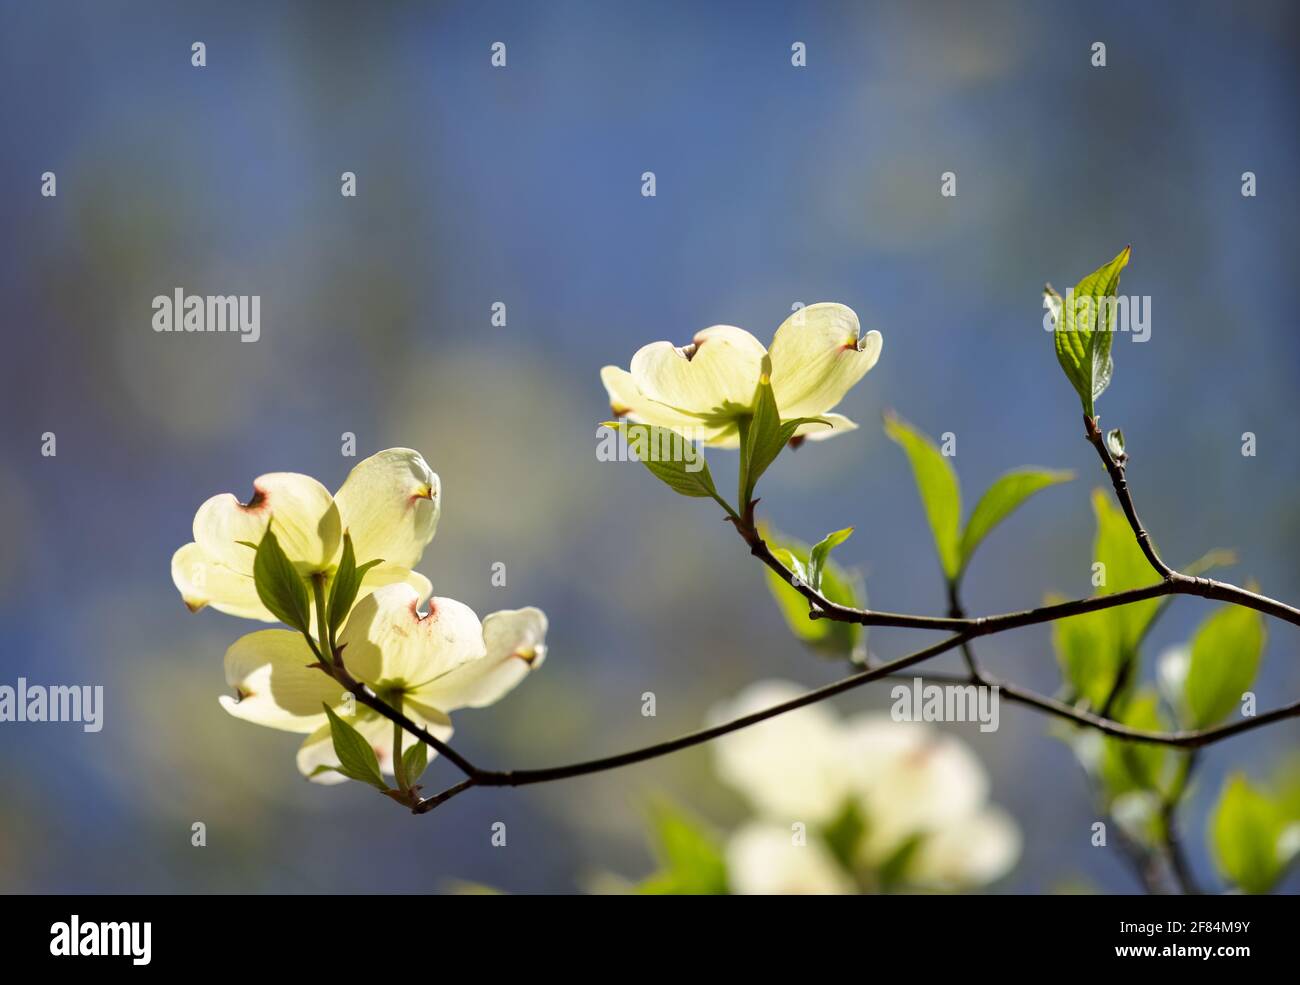 Cornouiller à fleurs (Cornus florida) - Comté de Hall, Géorgie. La lumière du soleil brille à travers les fleurs d'un arbre à cornouiller en fleur lors d'un jour de printemps ensoleillé. Banque D'Images